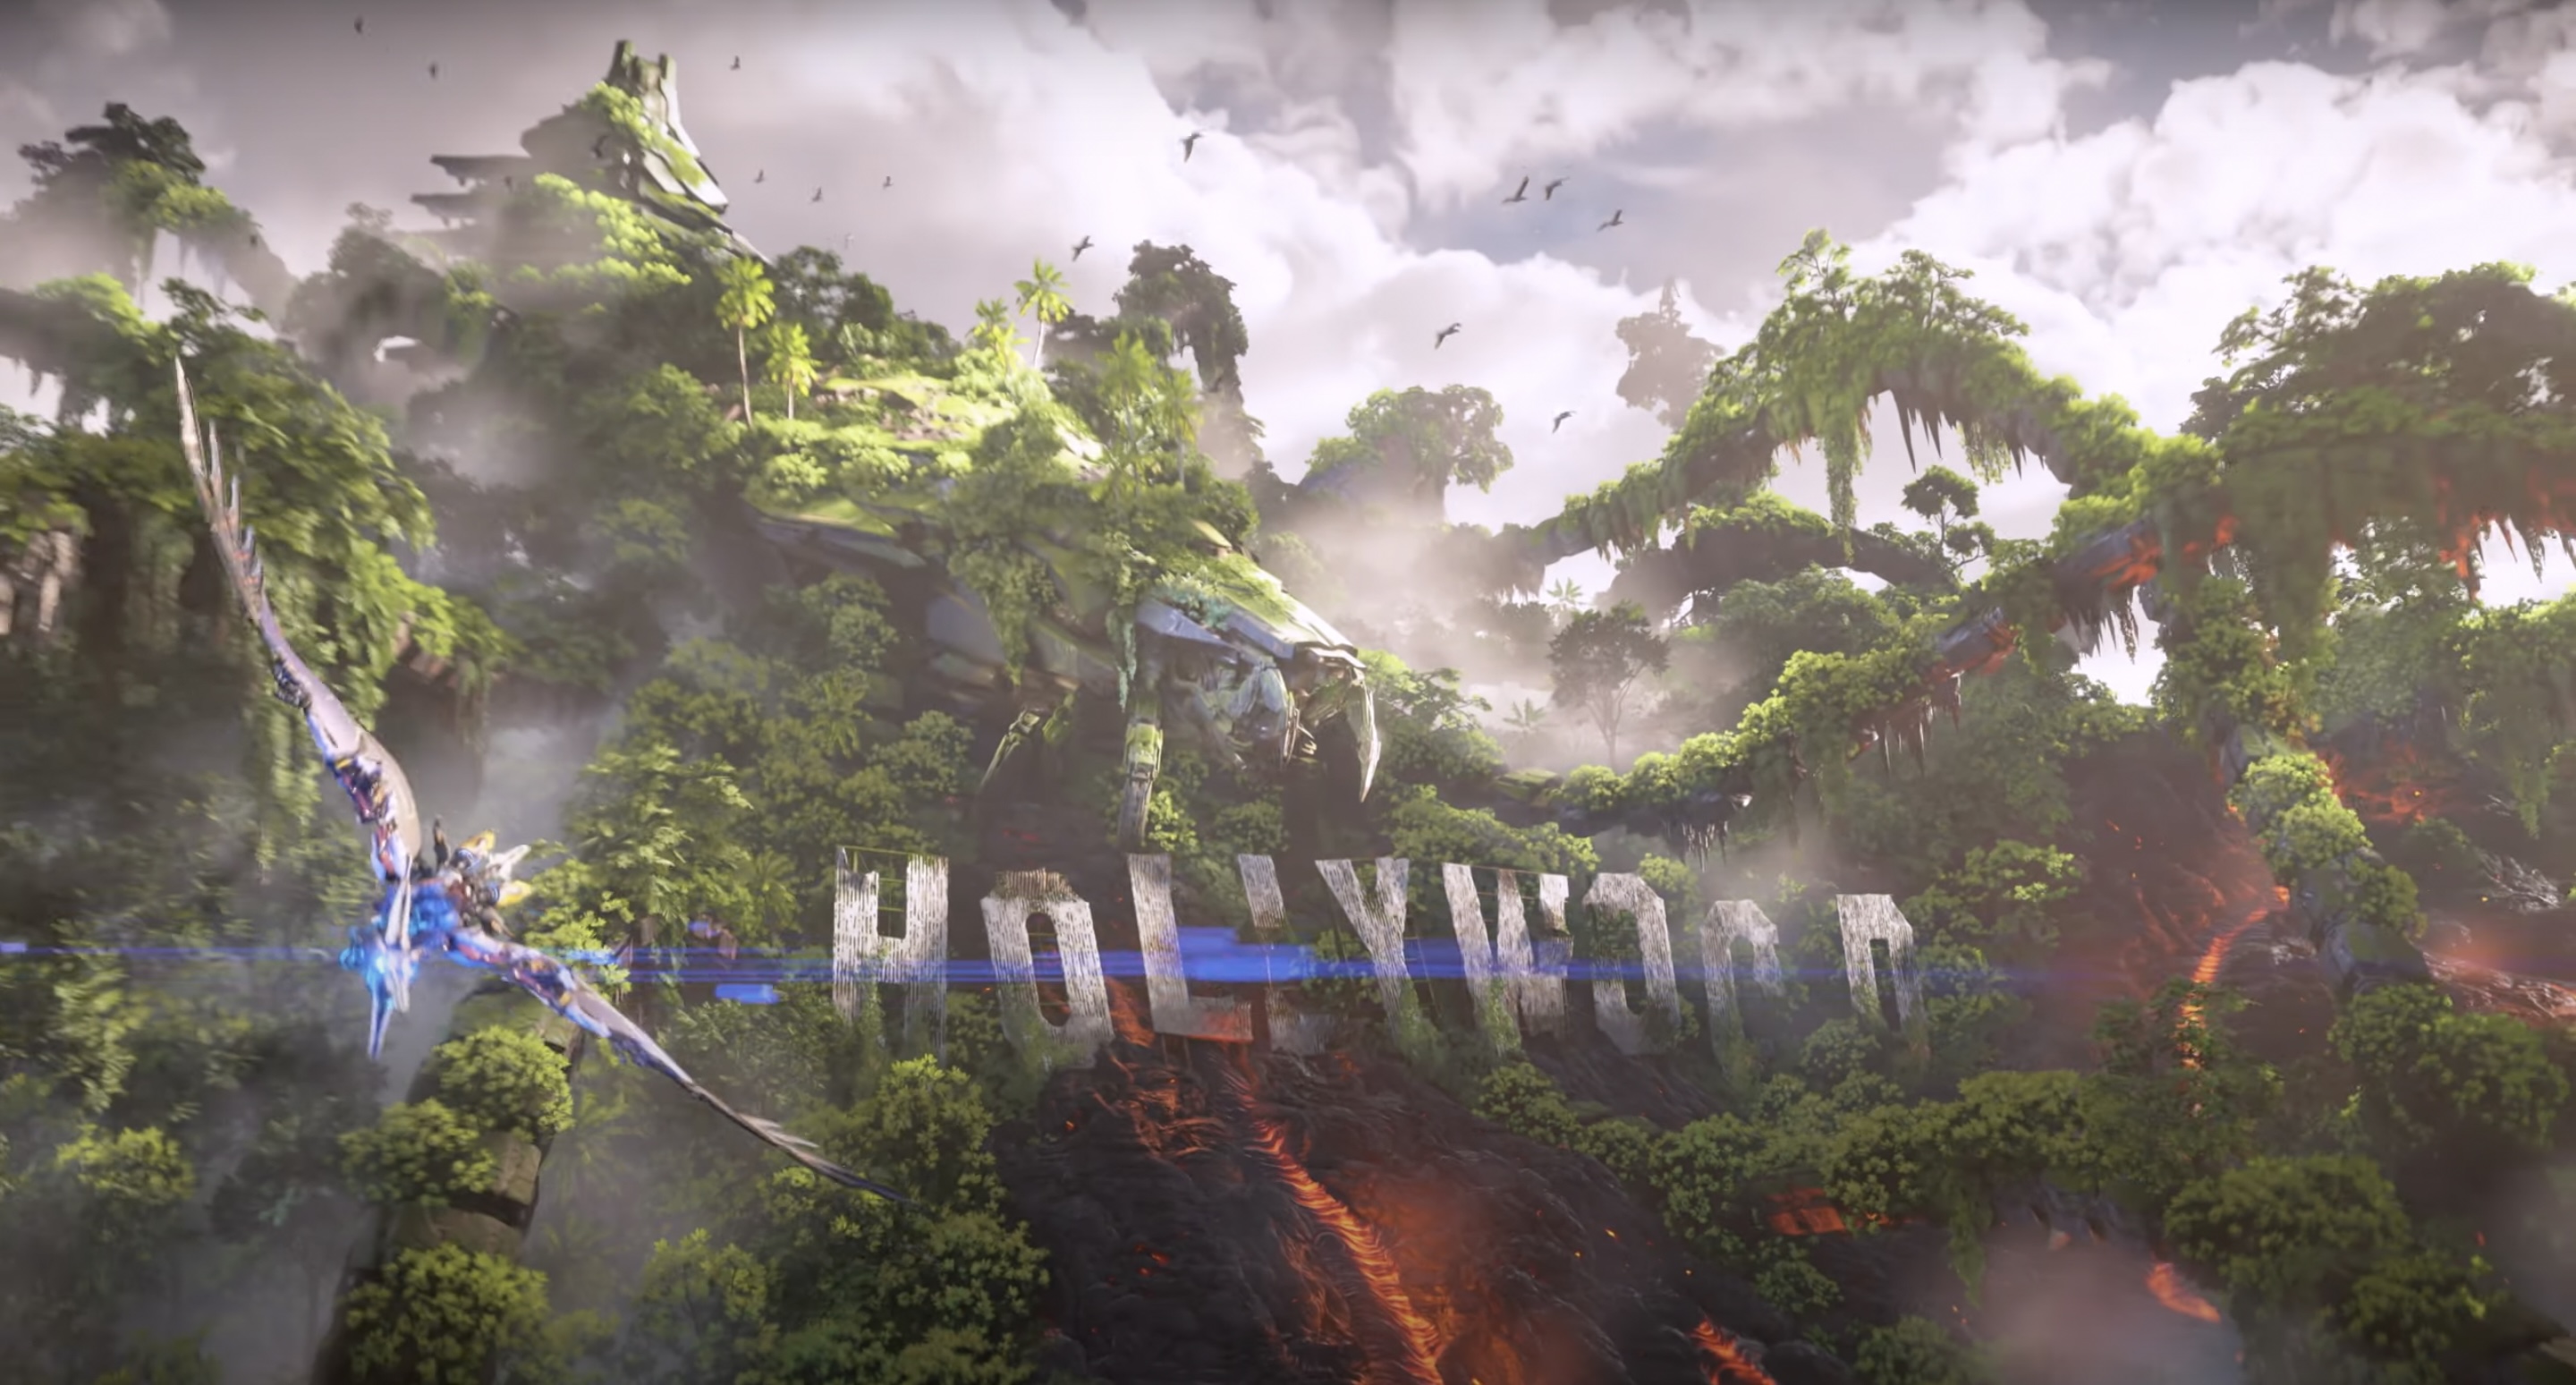 Horizon Forbidden West reveals Burning Shores DLC at TGA 2022